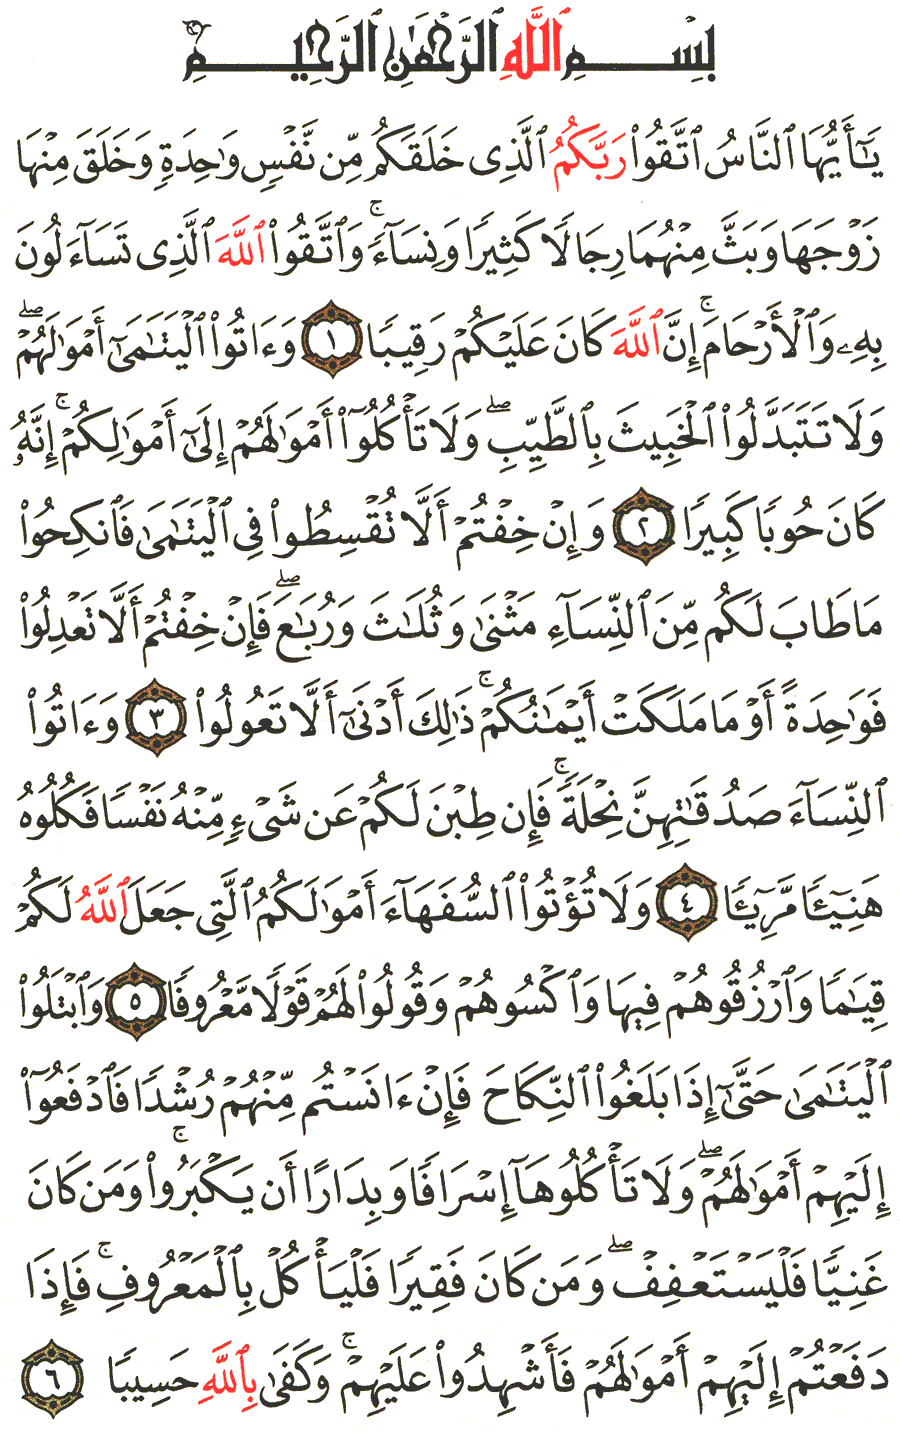 الصفحة رقم 77 من القرآن الكريم مكتوبة من المصحف